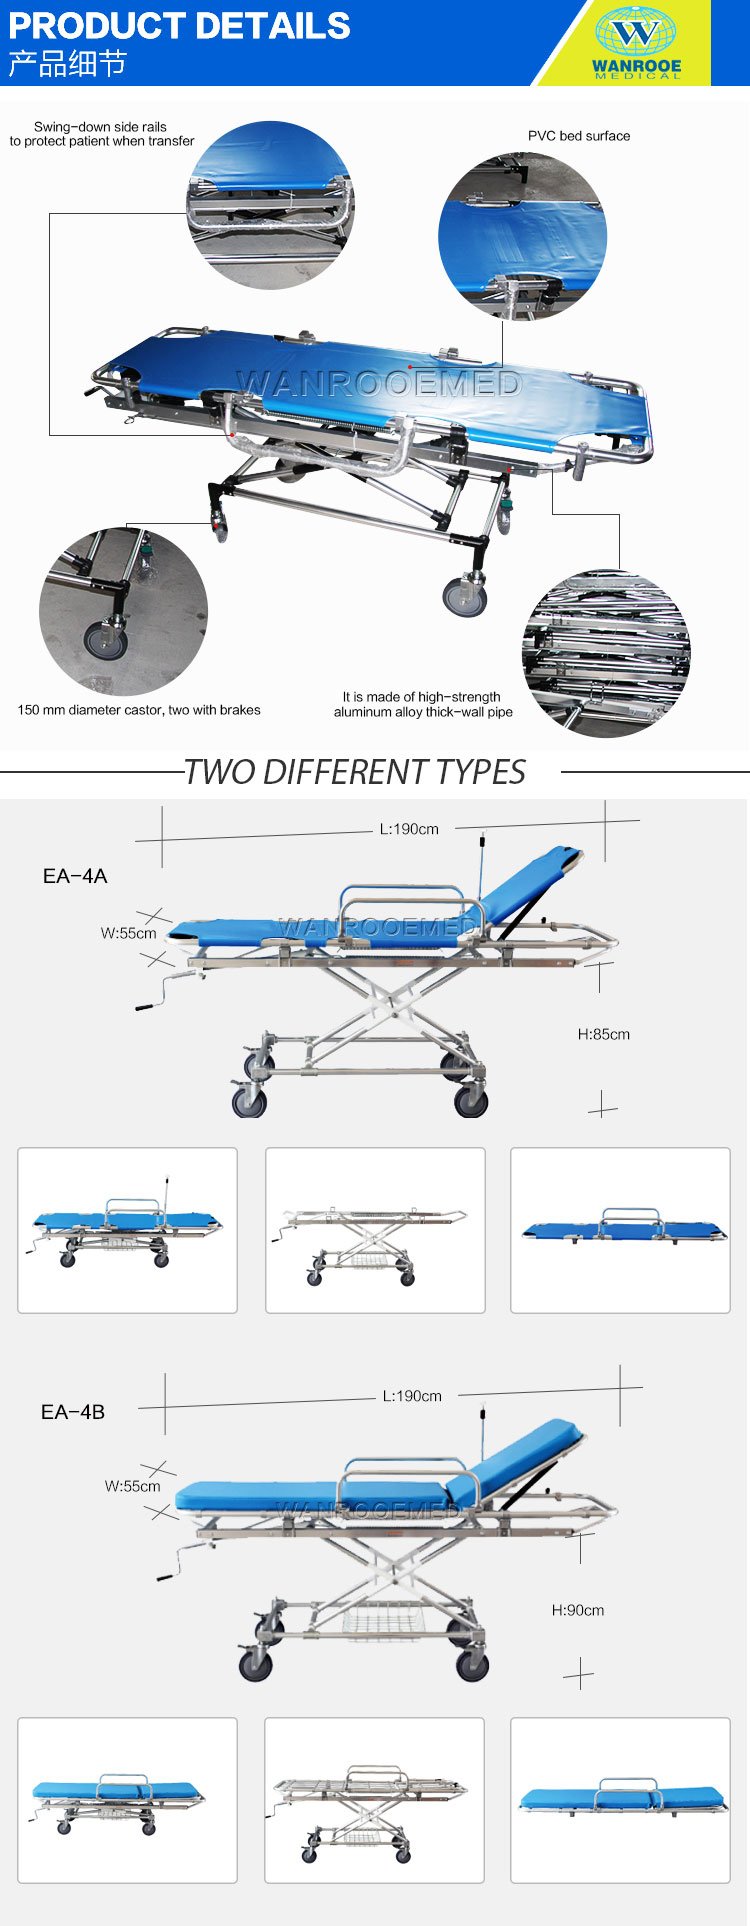 medical stretcher bed,transfer cart,medical stretcher trolley,transfer trolley bed,adjustable stretcher 